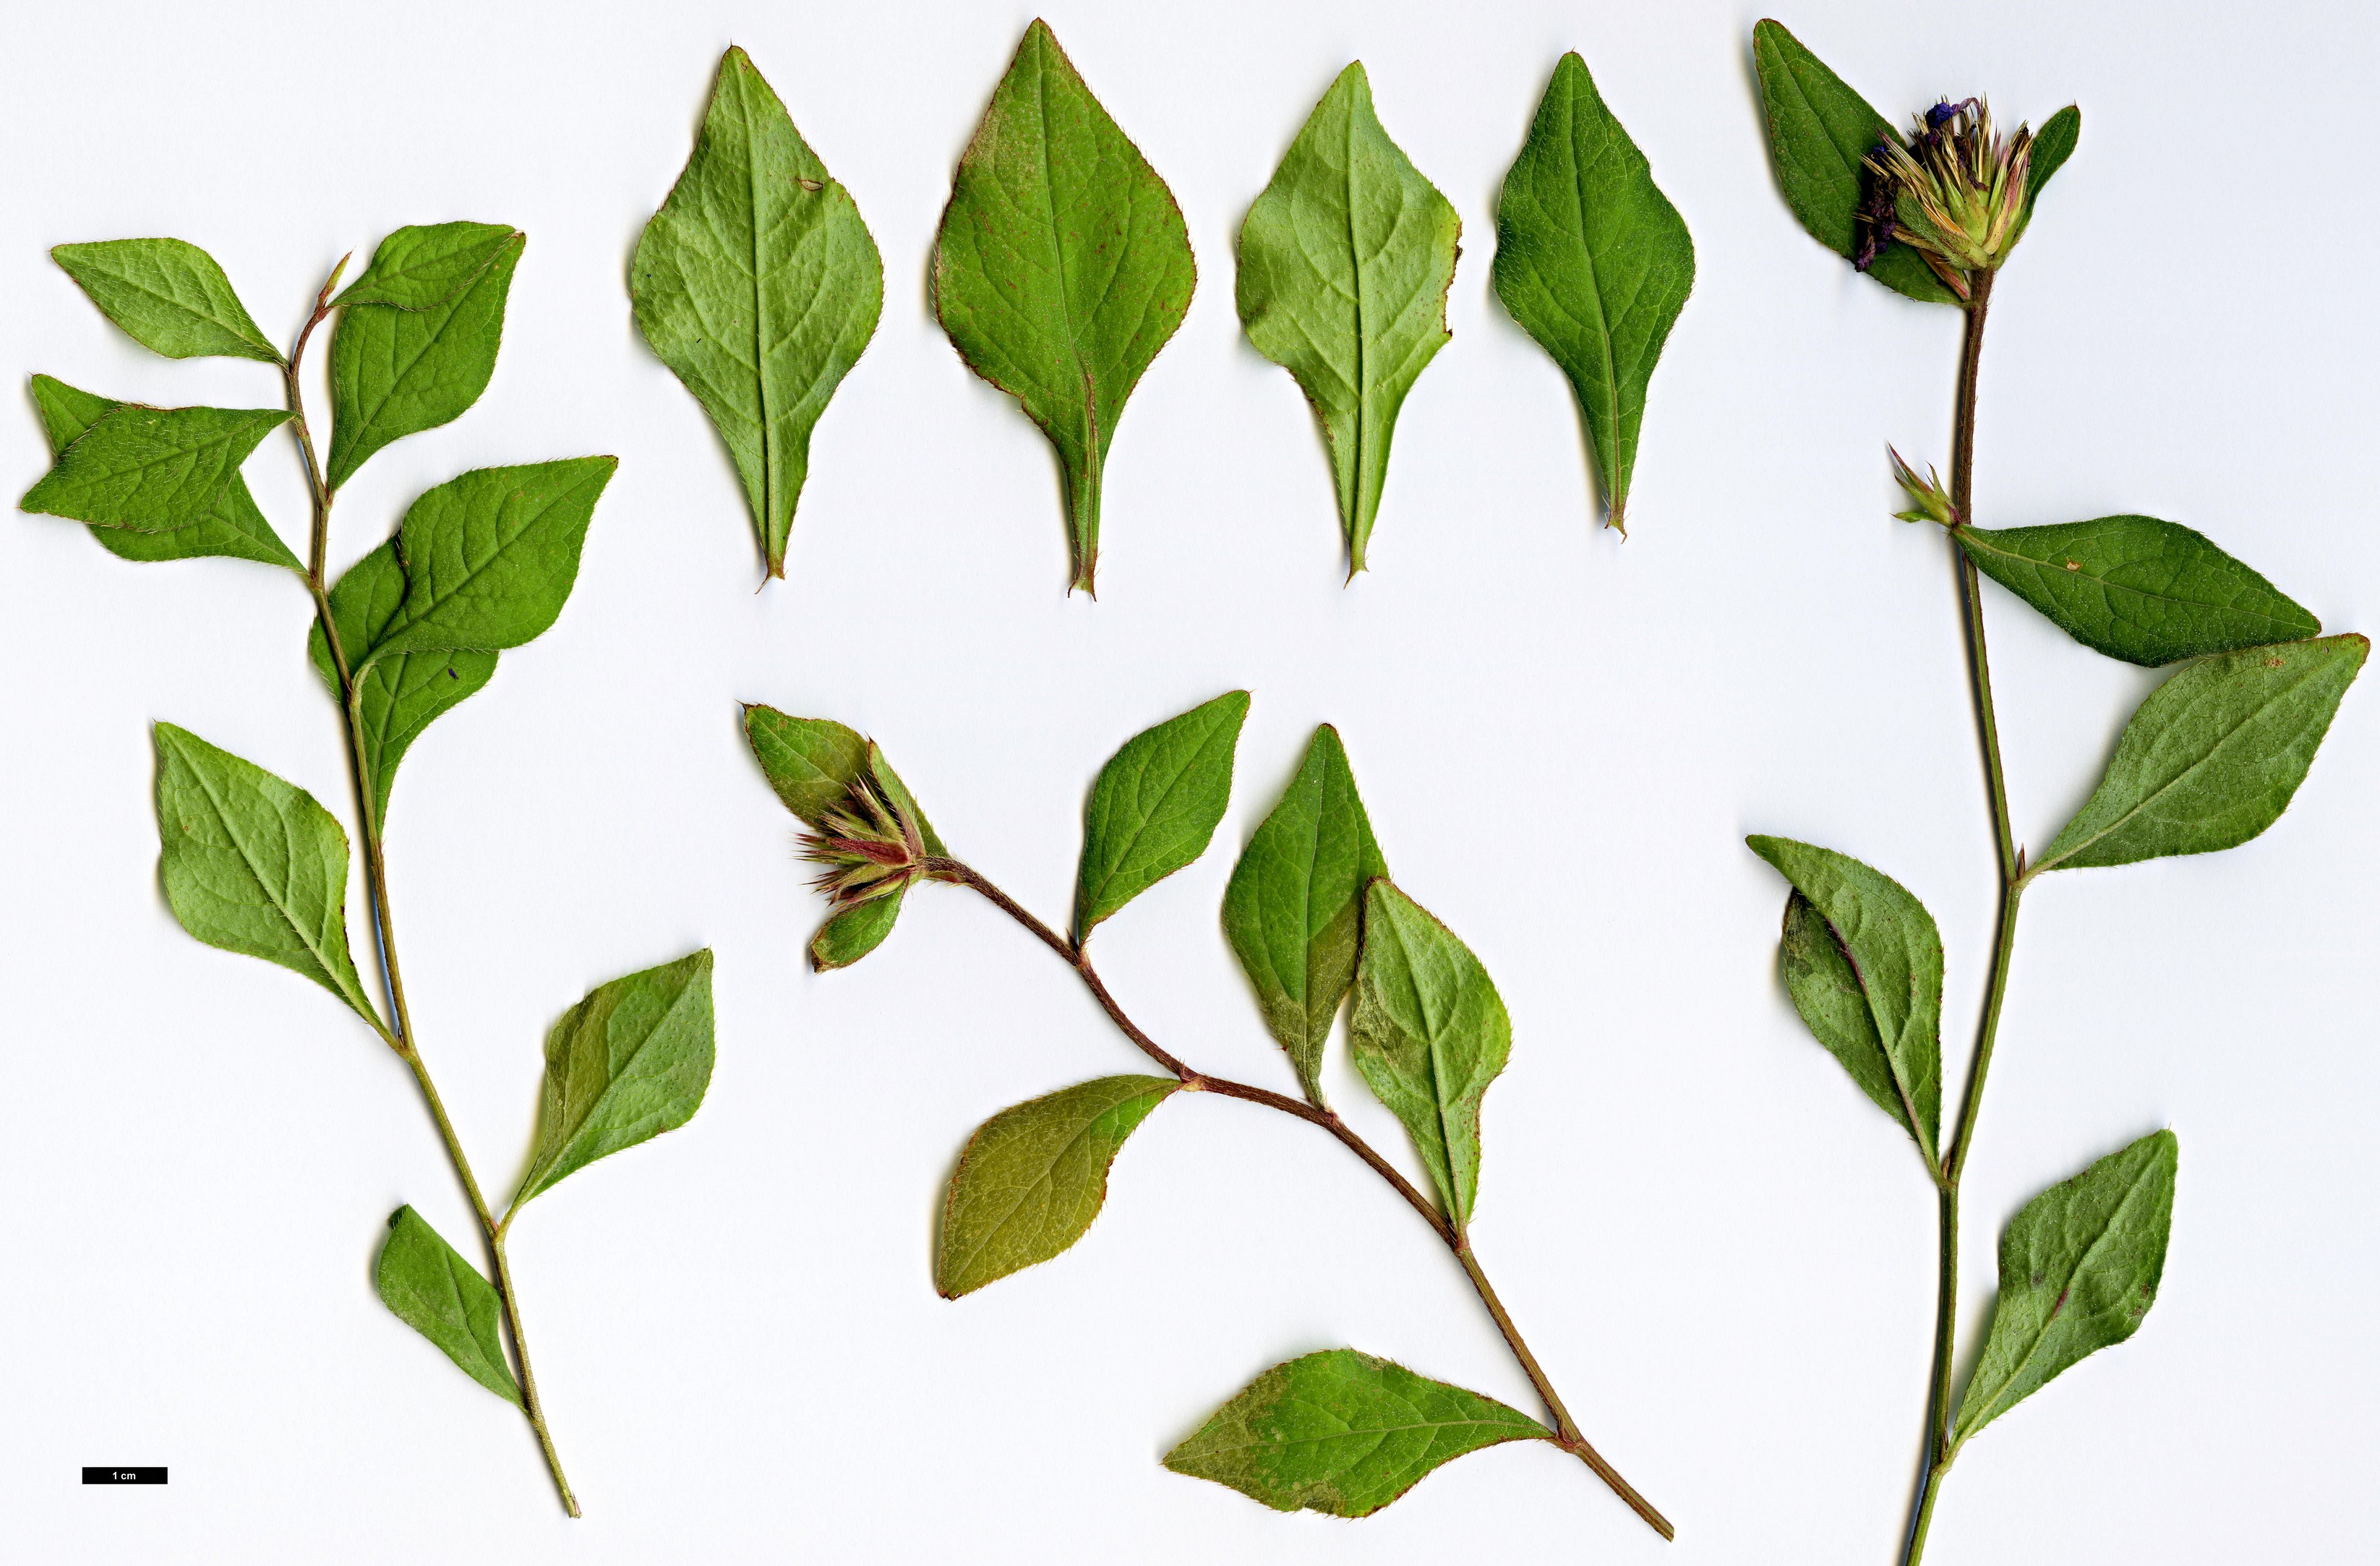 High resolution image: Family: Plumbaginaceae - Genus: Ceratostigma - Taxon: willmottianum